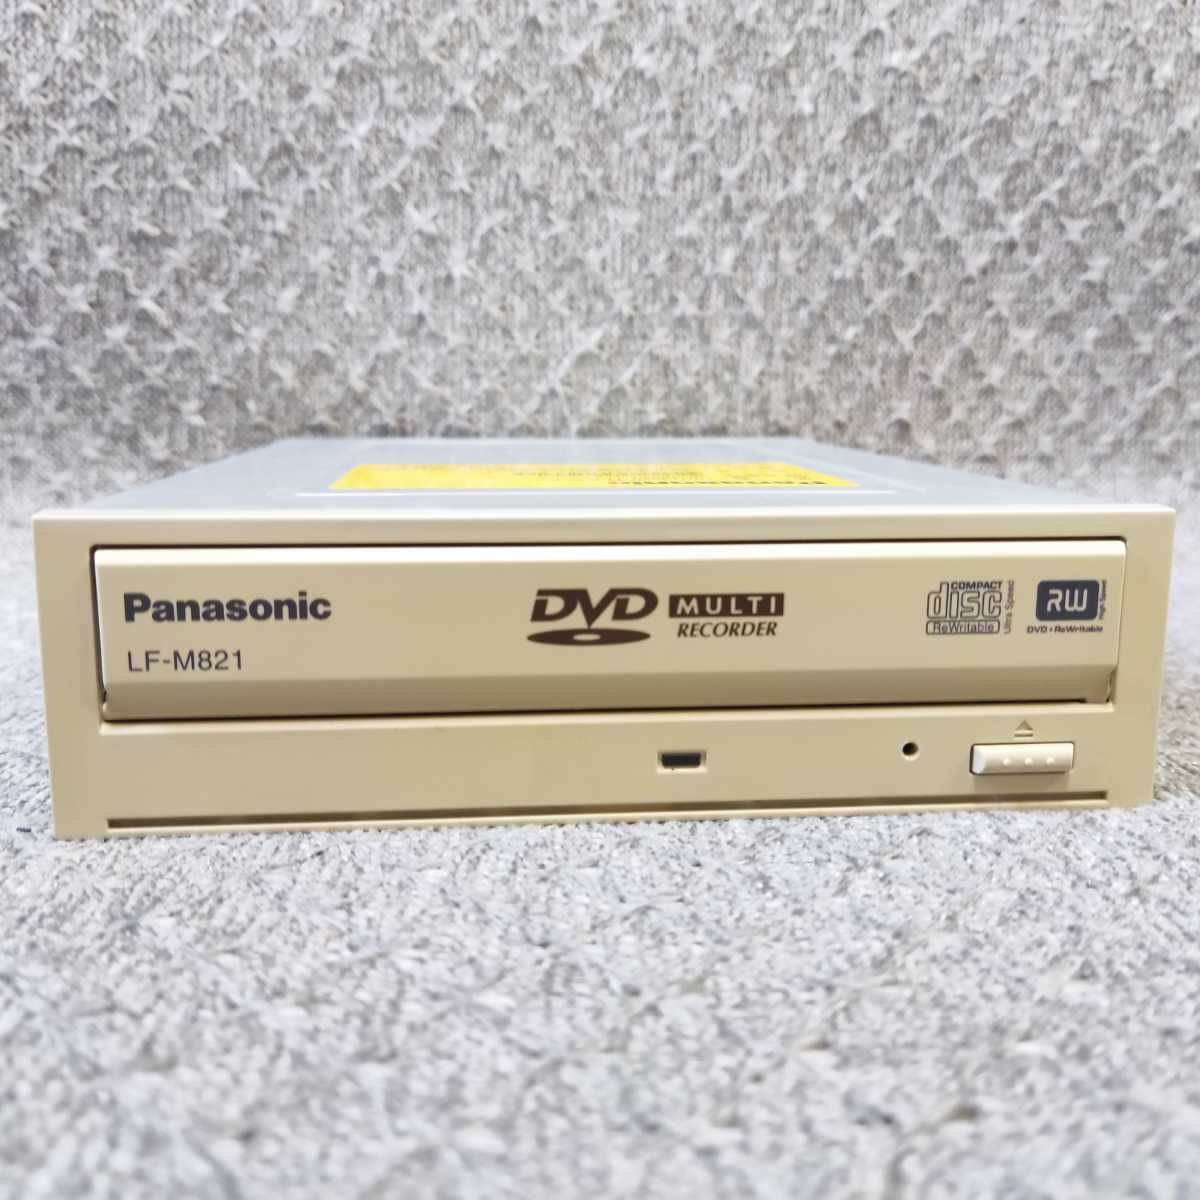 速達 送料無 ★ Panasonic LF-M821 内蔵 Multi DVDマルチドライブ カートリッジ 対応 ATAPI IDE 5.25インチ 中古完動品 ★確認済 DA042_画像6